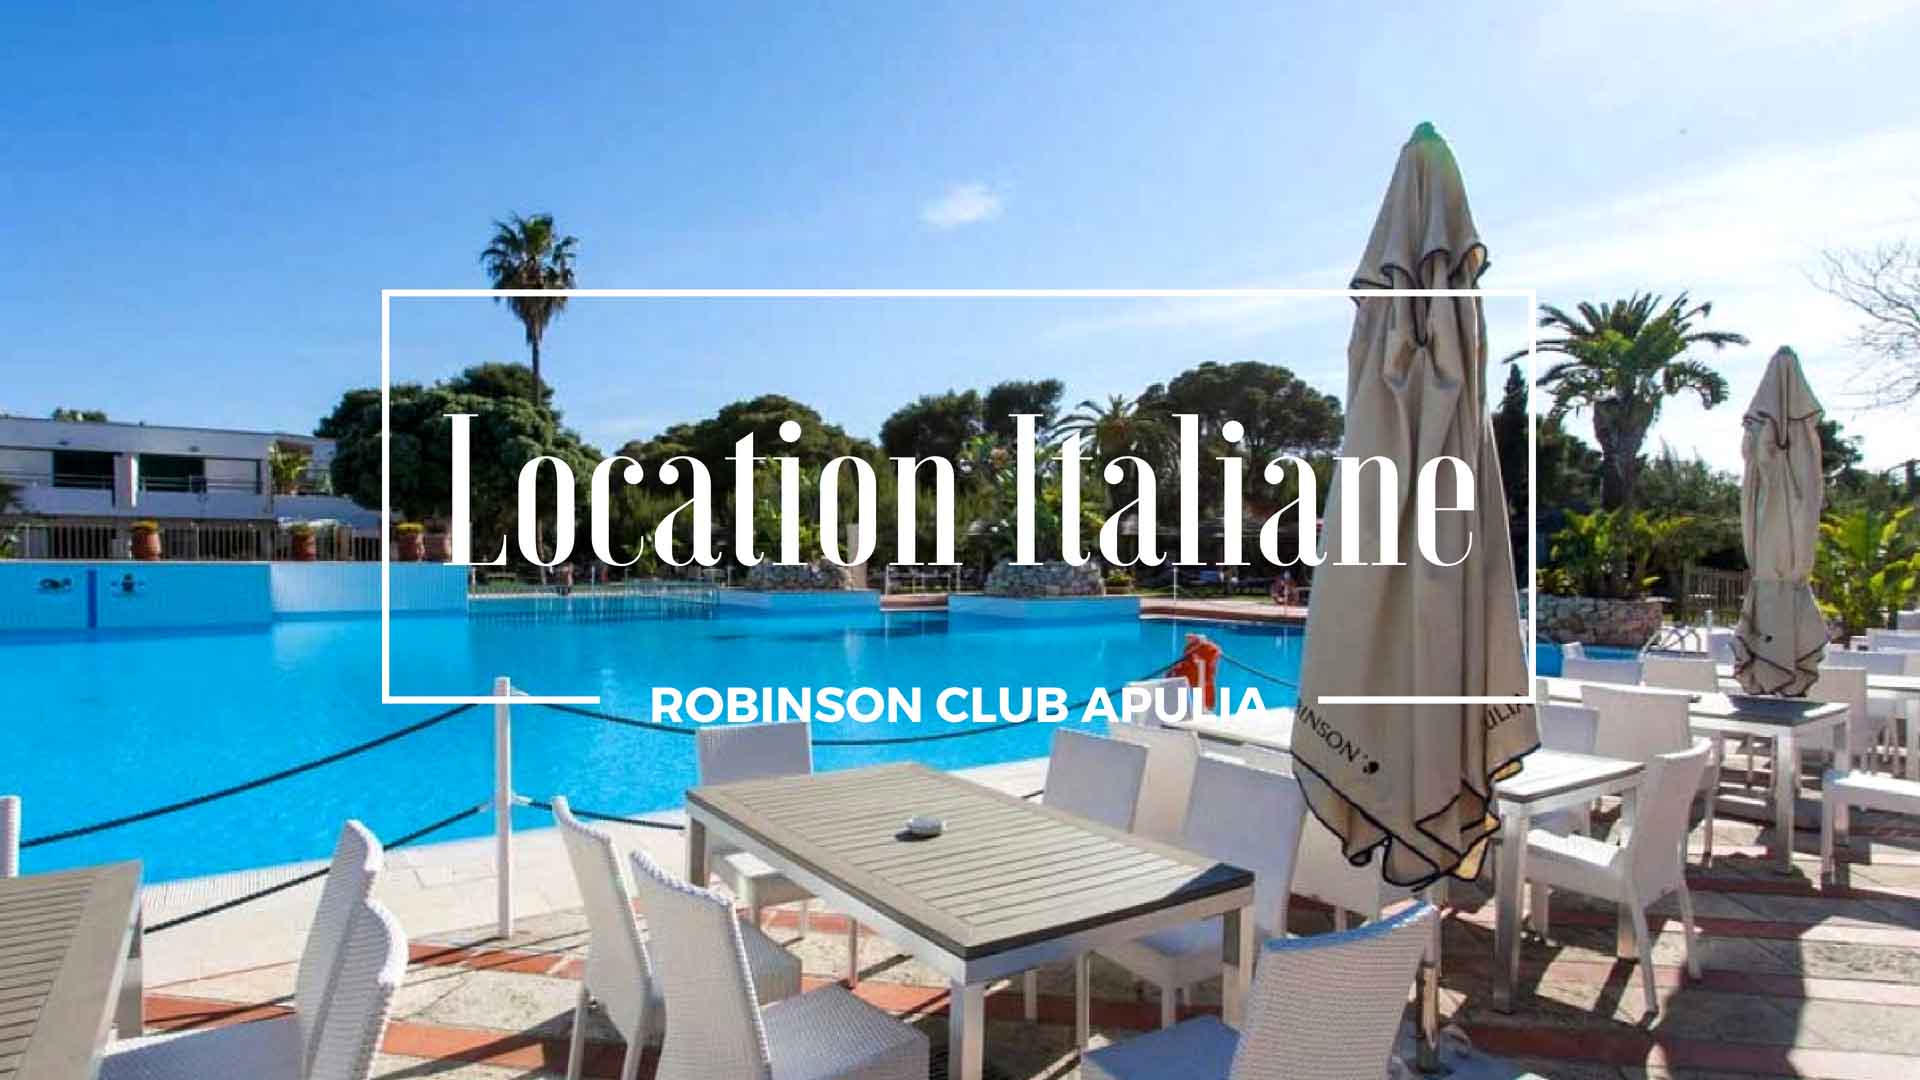 Robinson Club Apulia